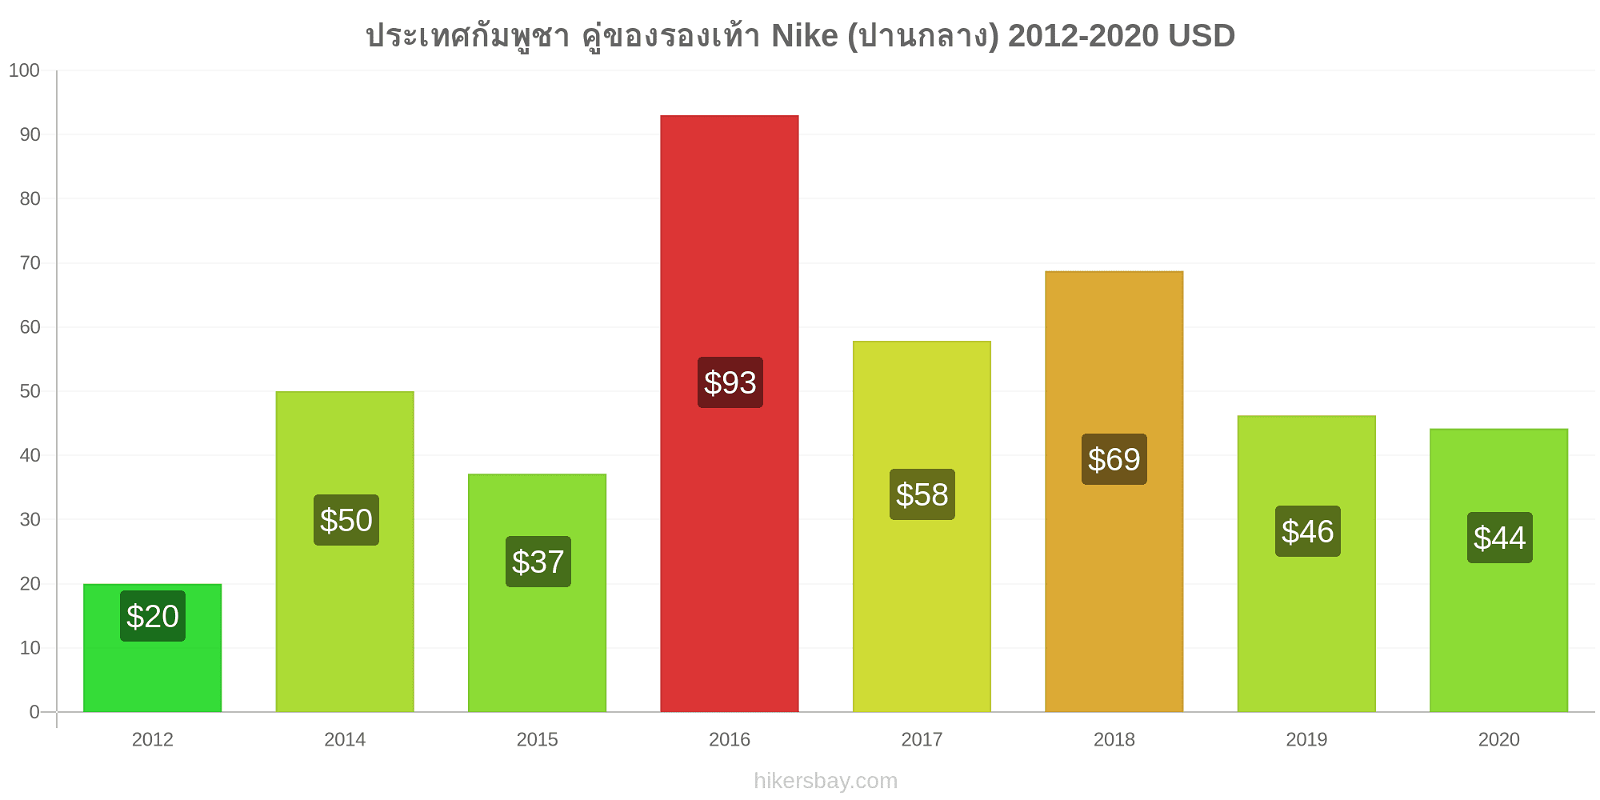 ประเทศกัมพูชา การเปลี่ยนแปลงราคา คู่ของรองเท้า Nike (ปานกลาง) hikersbay.com